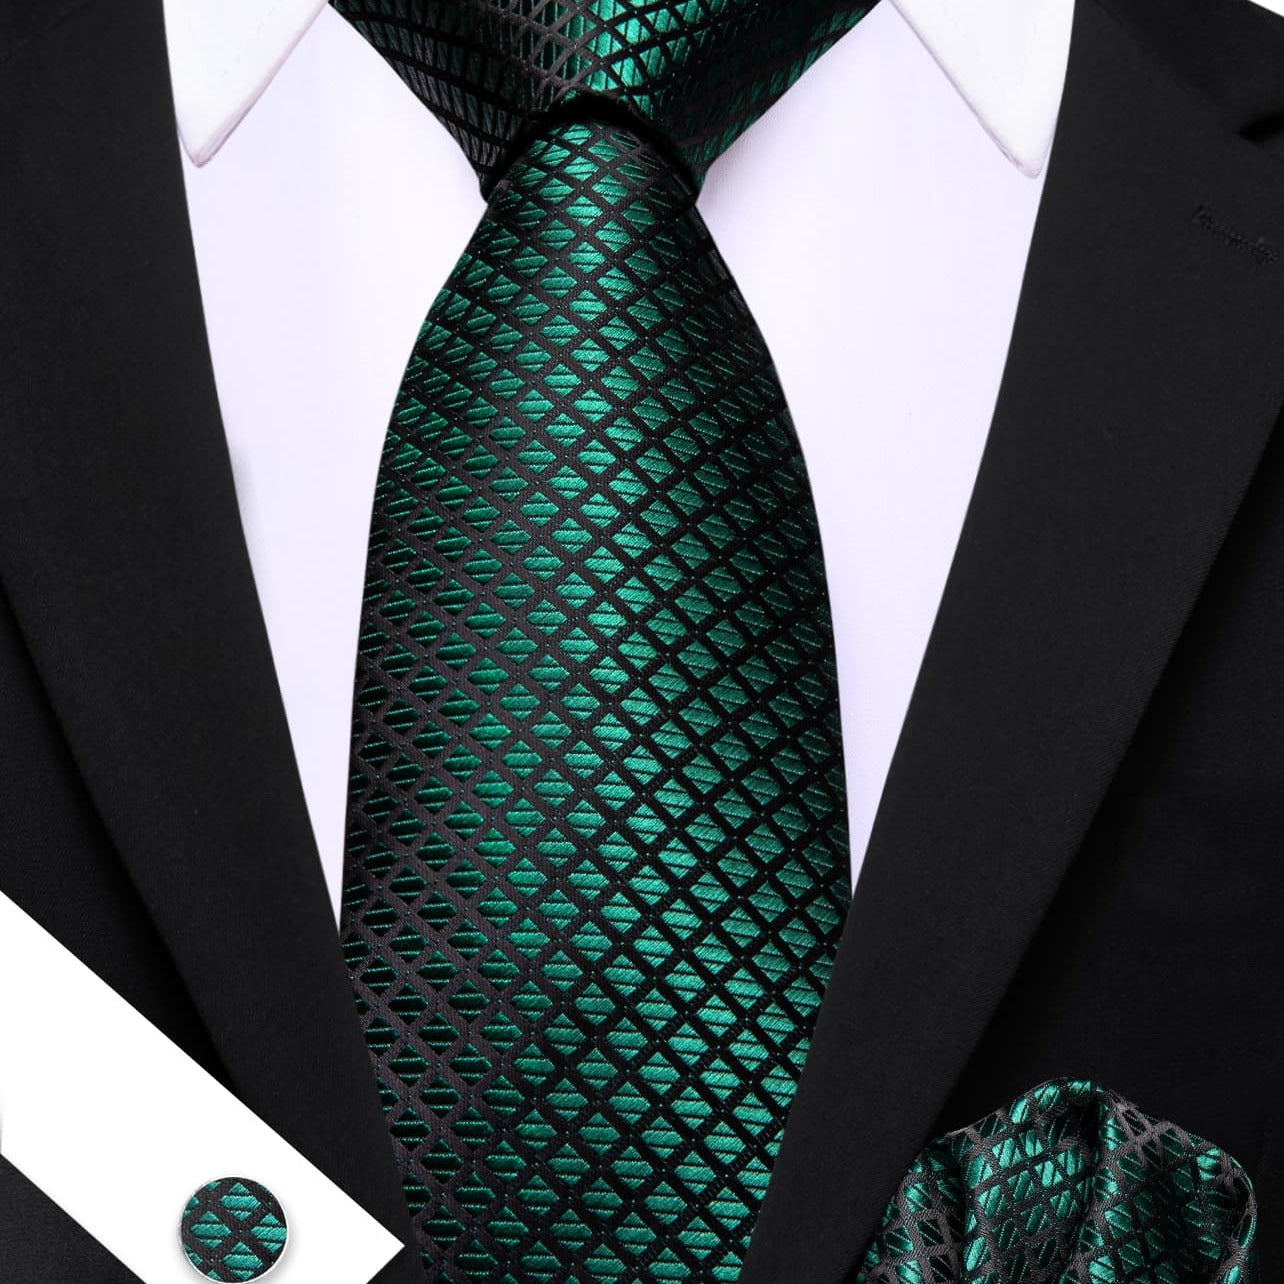  Plaid Tie Green Black Checkered Necktie and Cufflink Set